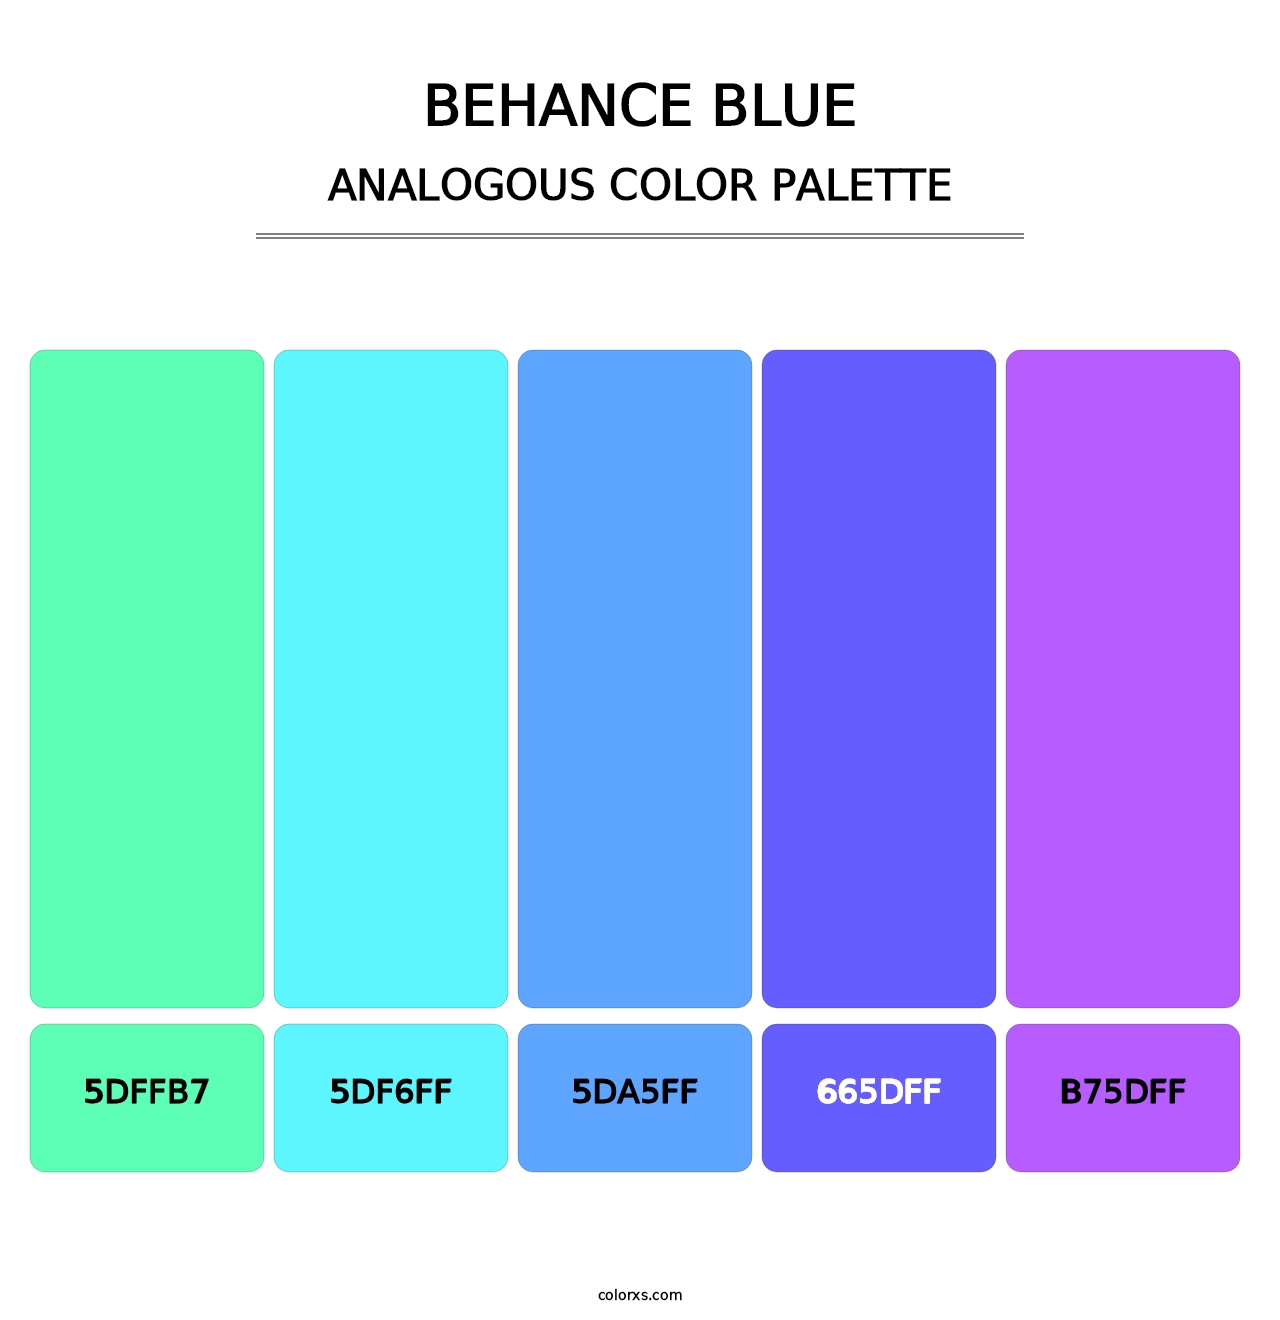 Behance Blue - Analogous Color Palette